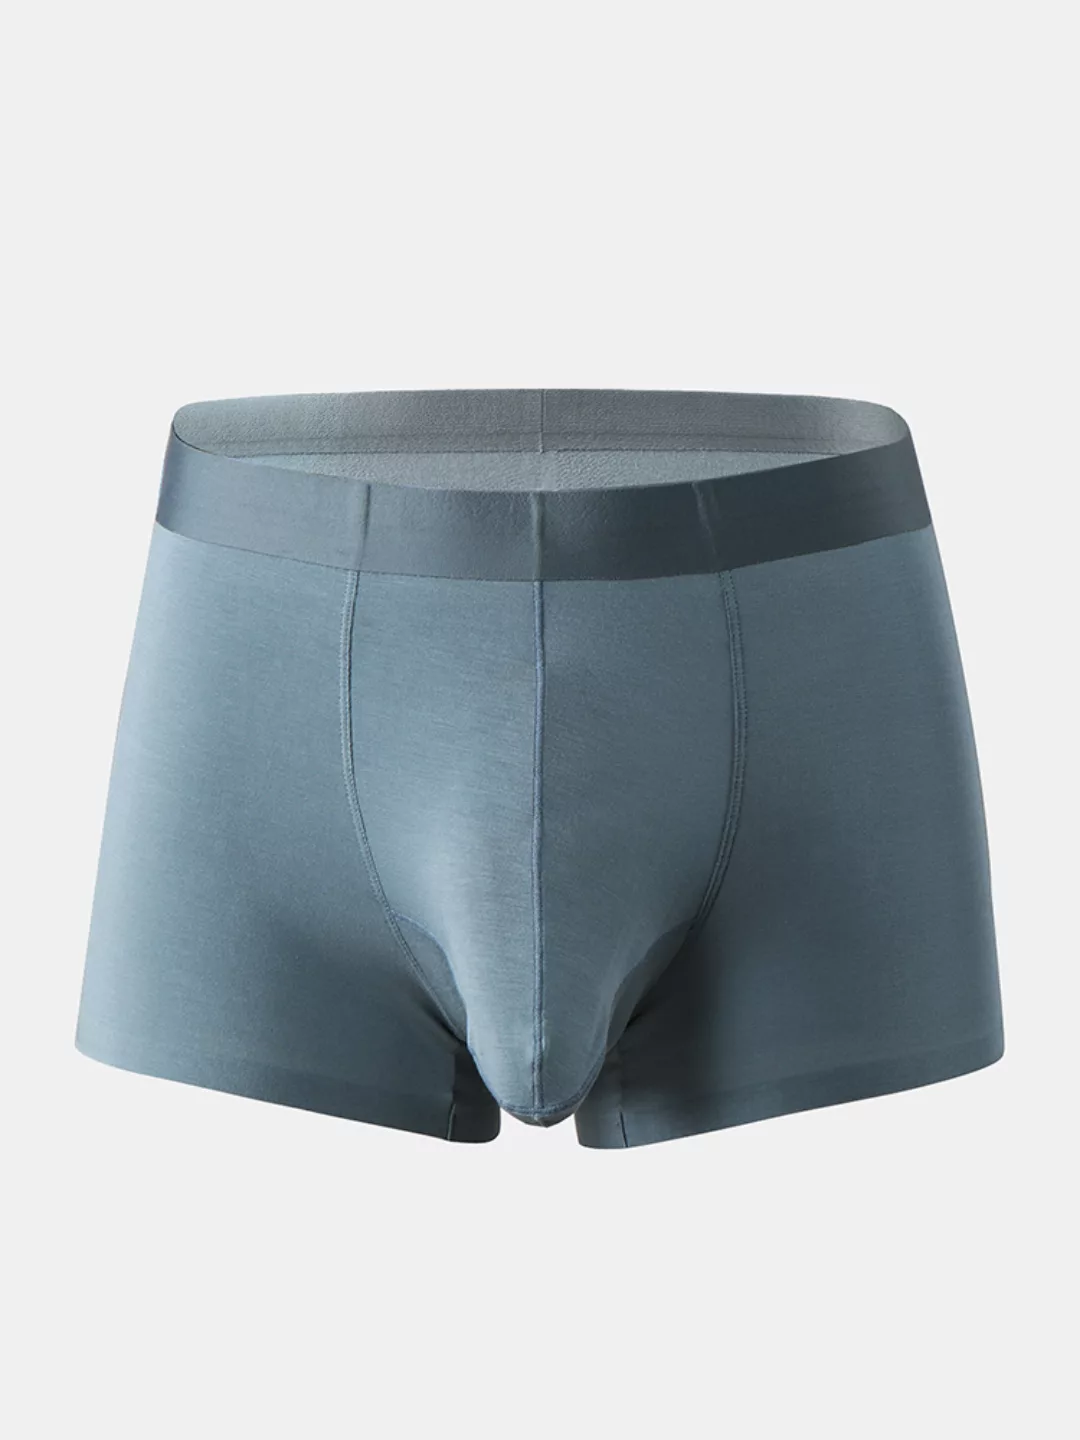 Männer Sexy Elephant Boxer Briefs Modal Soft Nahtlose Unterwäsche mit Tasch günstig online kaufen